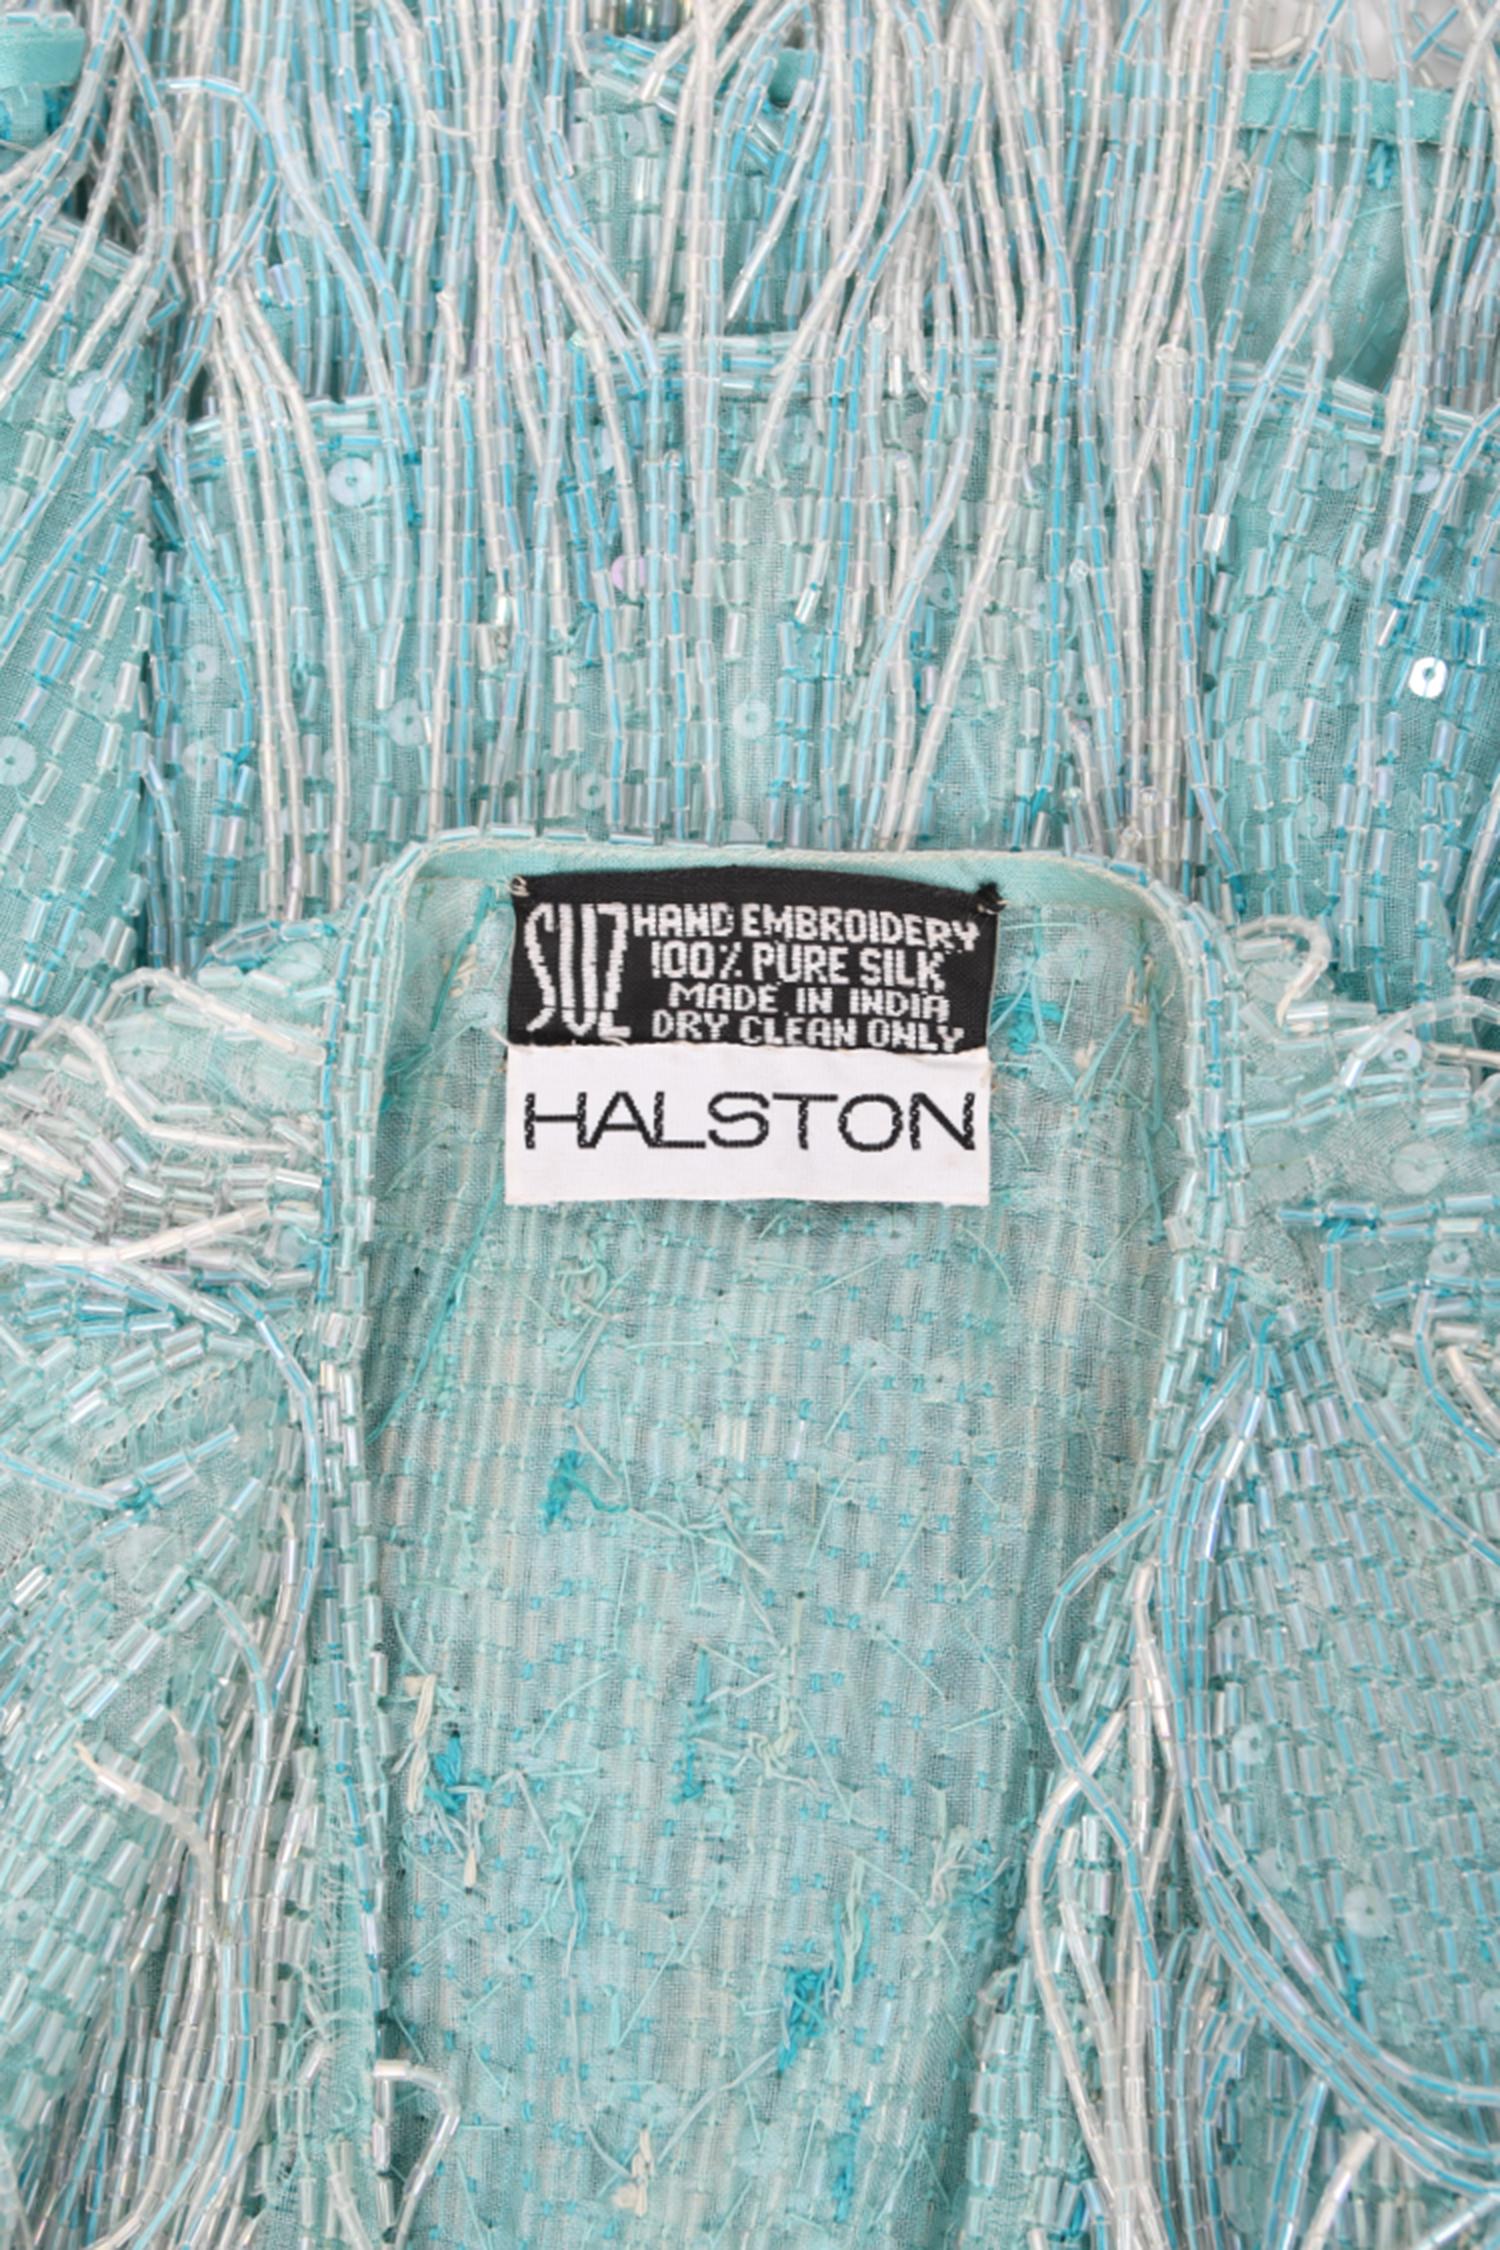 Halston Couture - Cardigan disco vintage à franges en soie perlée bleu glace, années 1970 9